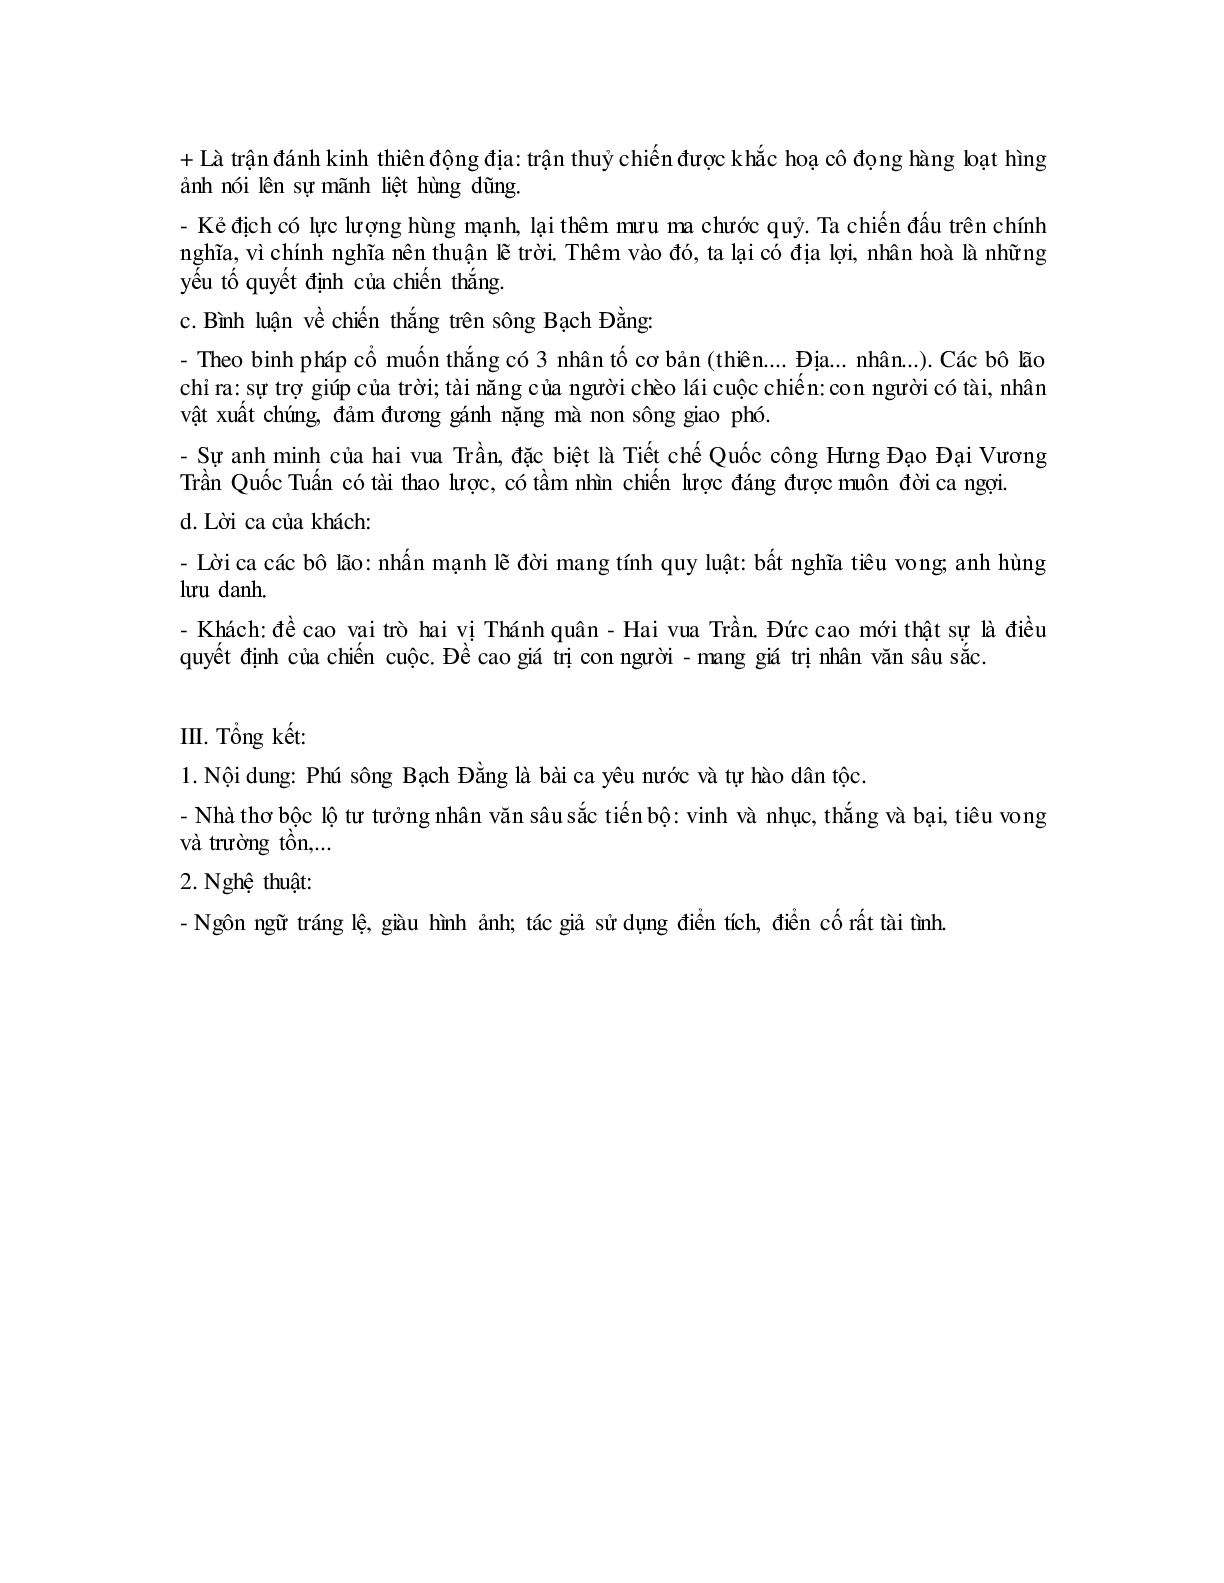 Soạn bài Phú sông Bạch Đằng - ngắn nhất Soạn văn 10 (trang 2)